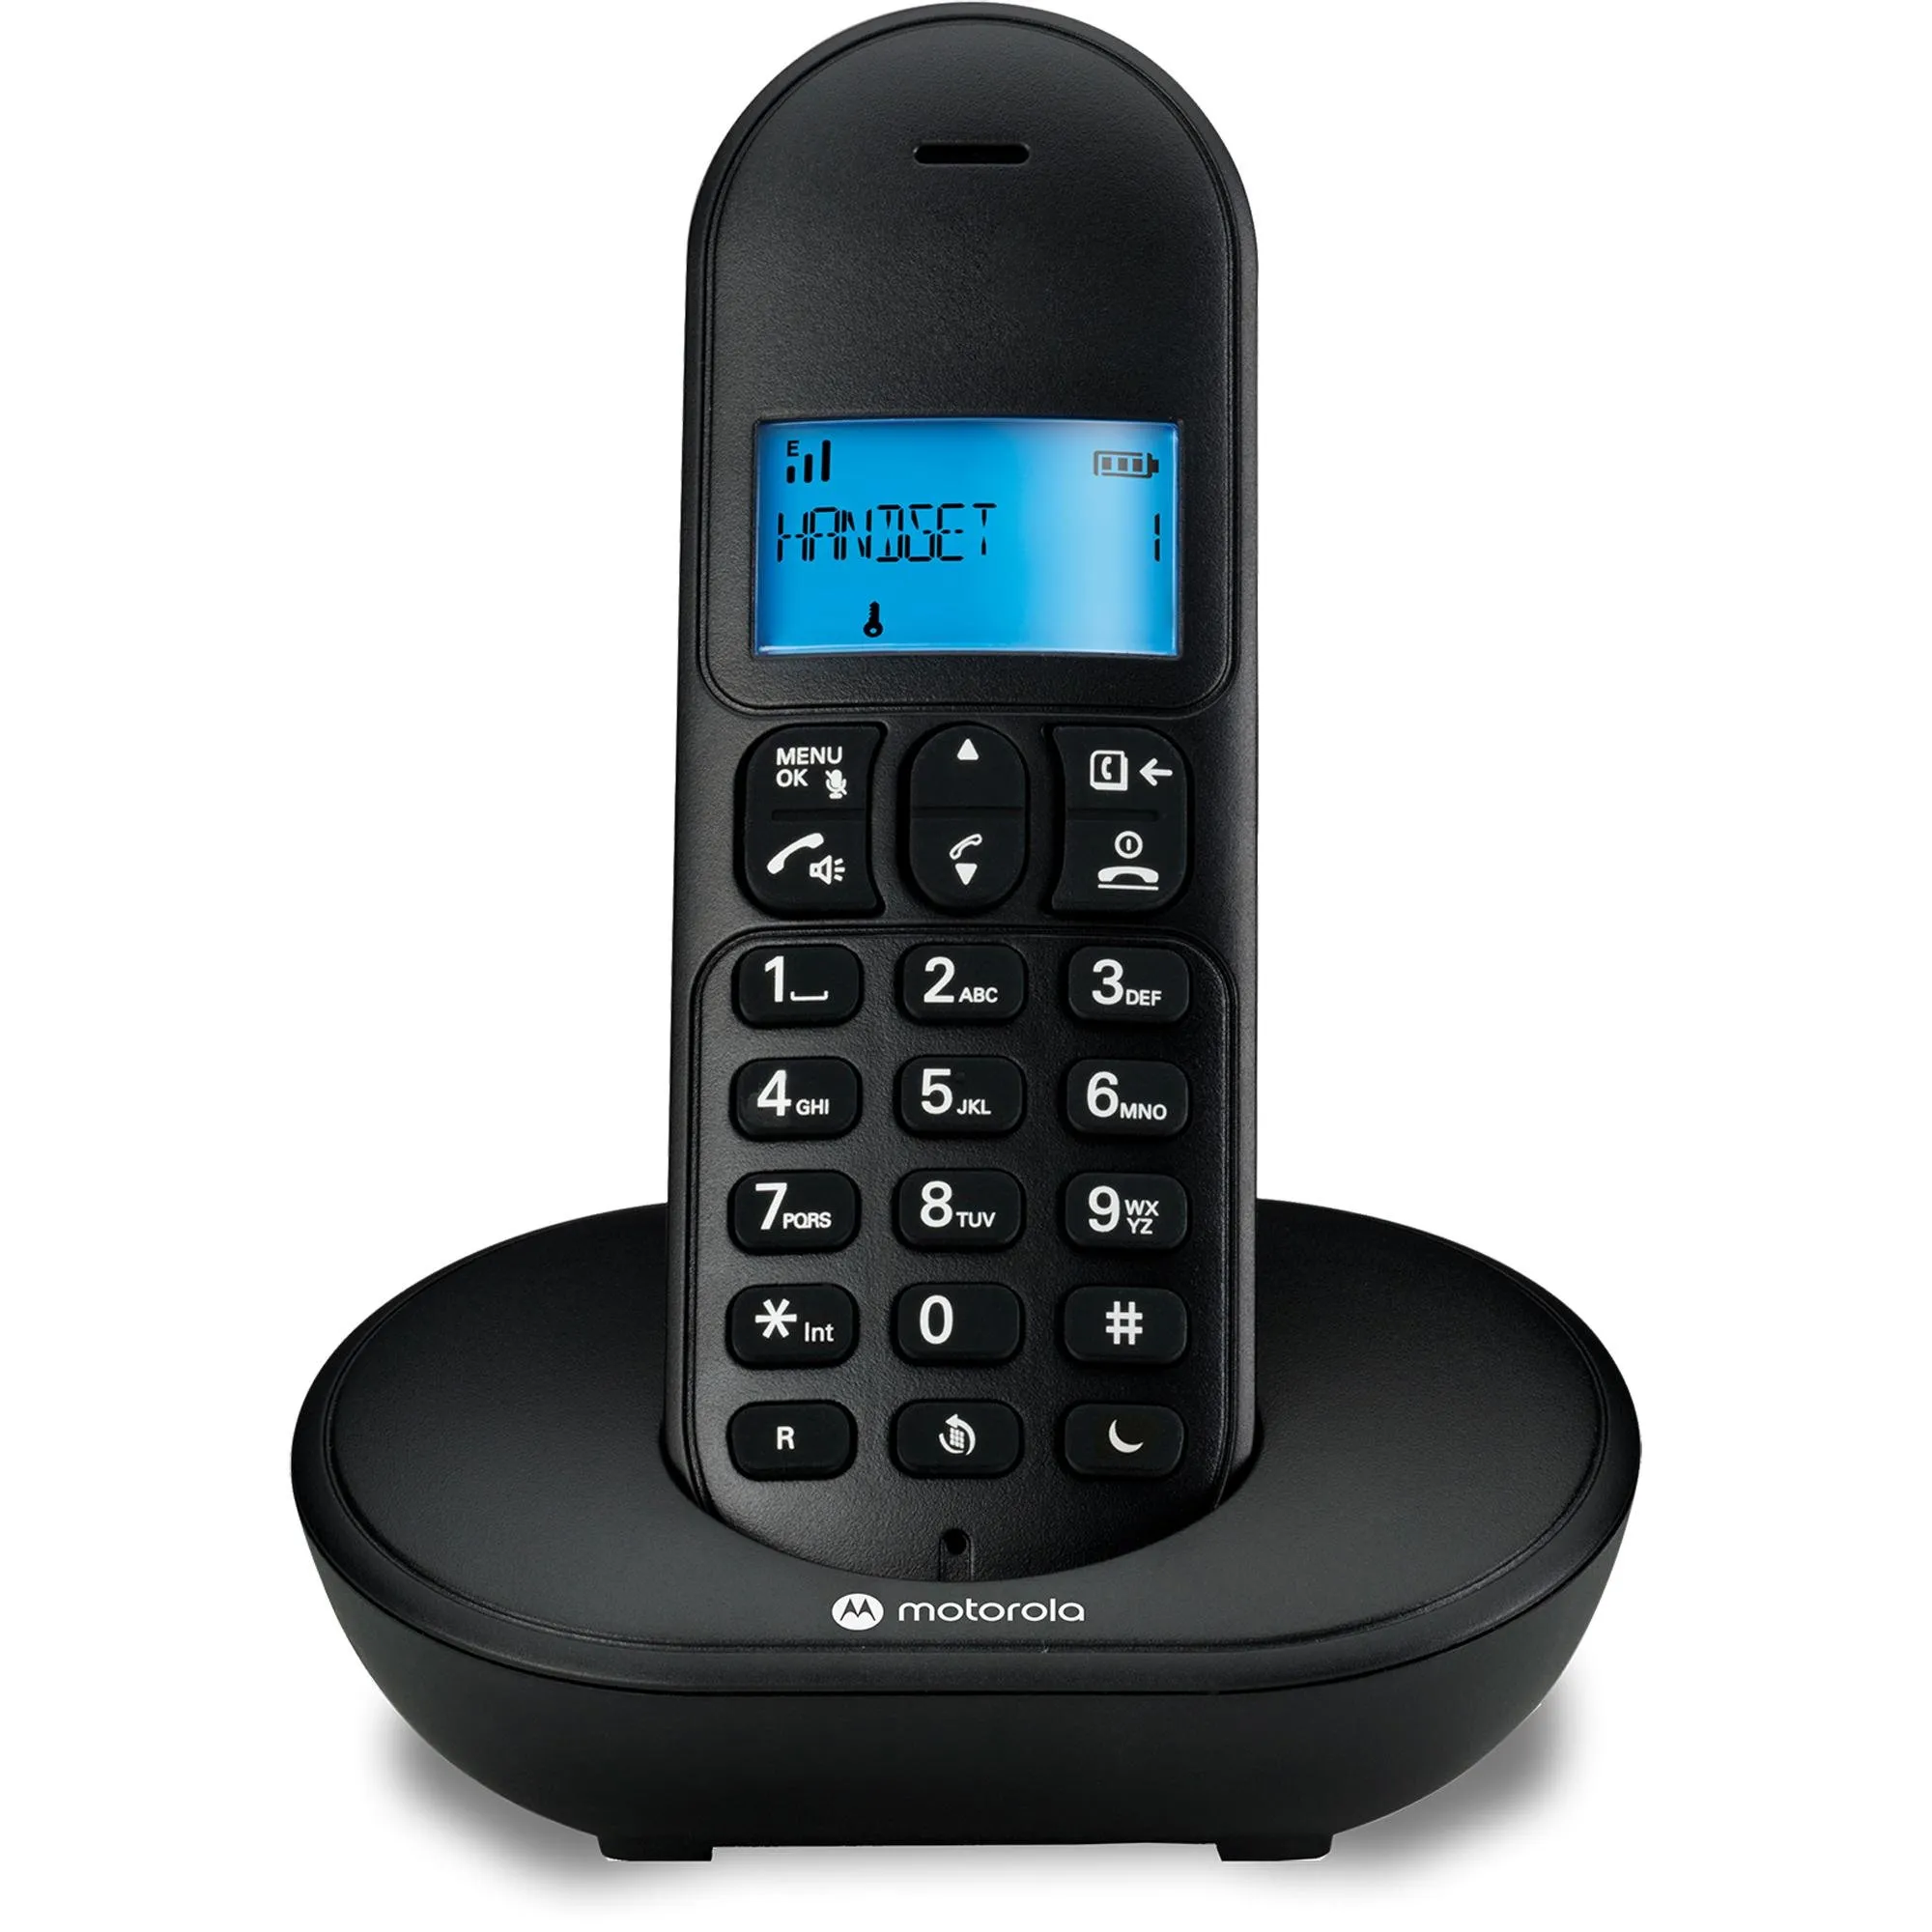 Telefone Sem Fio Motorola MT150 DECT Preto por 252,99 à vista no boleto/pix ou parcele em até 10x sem juros. Compre na loja Mundomax!